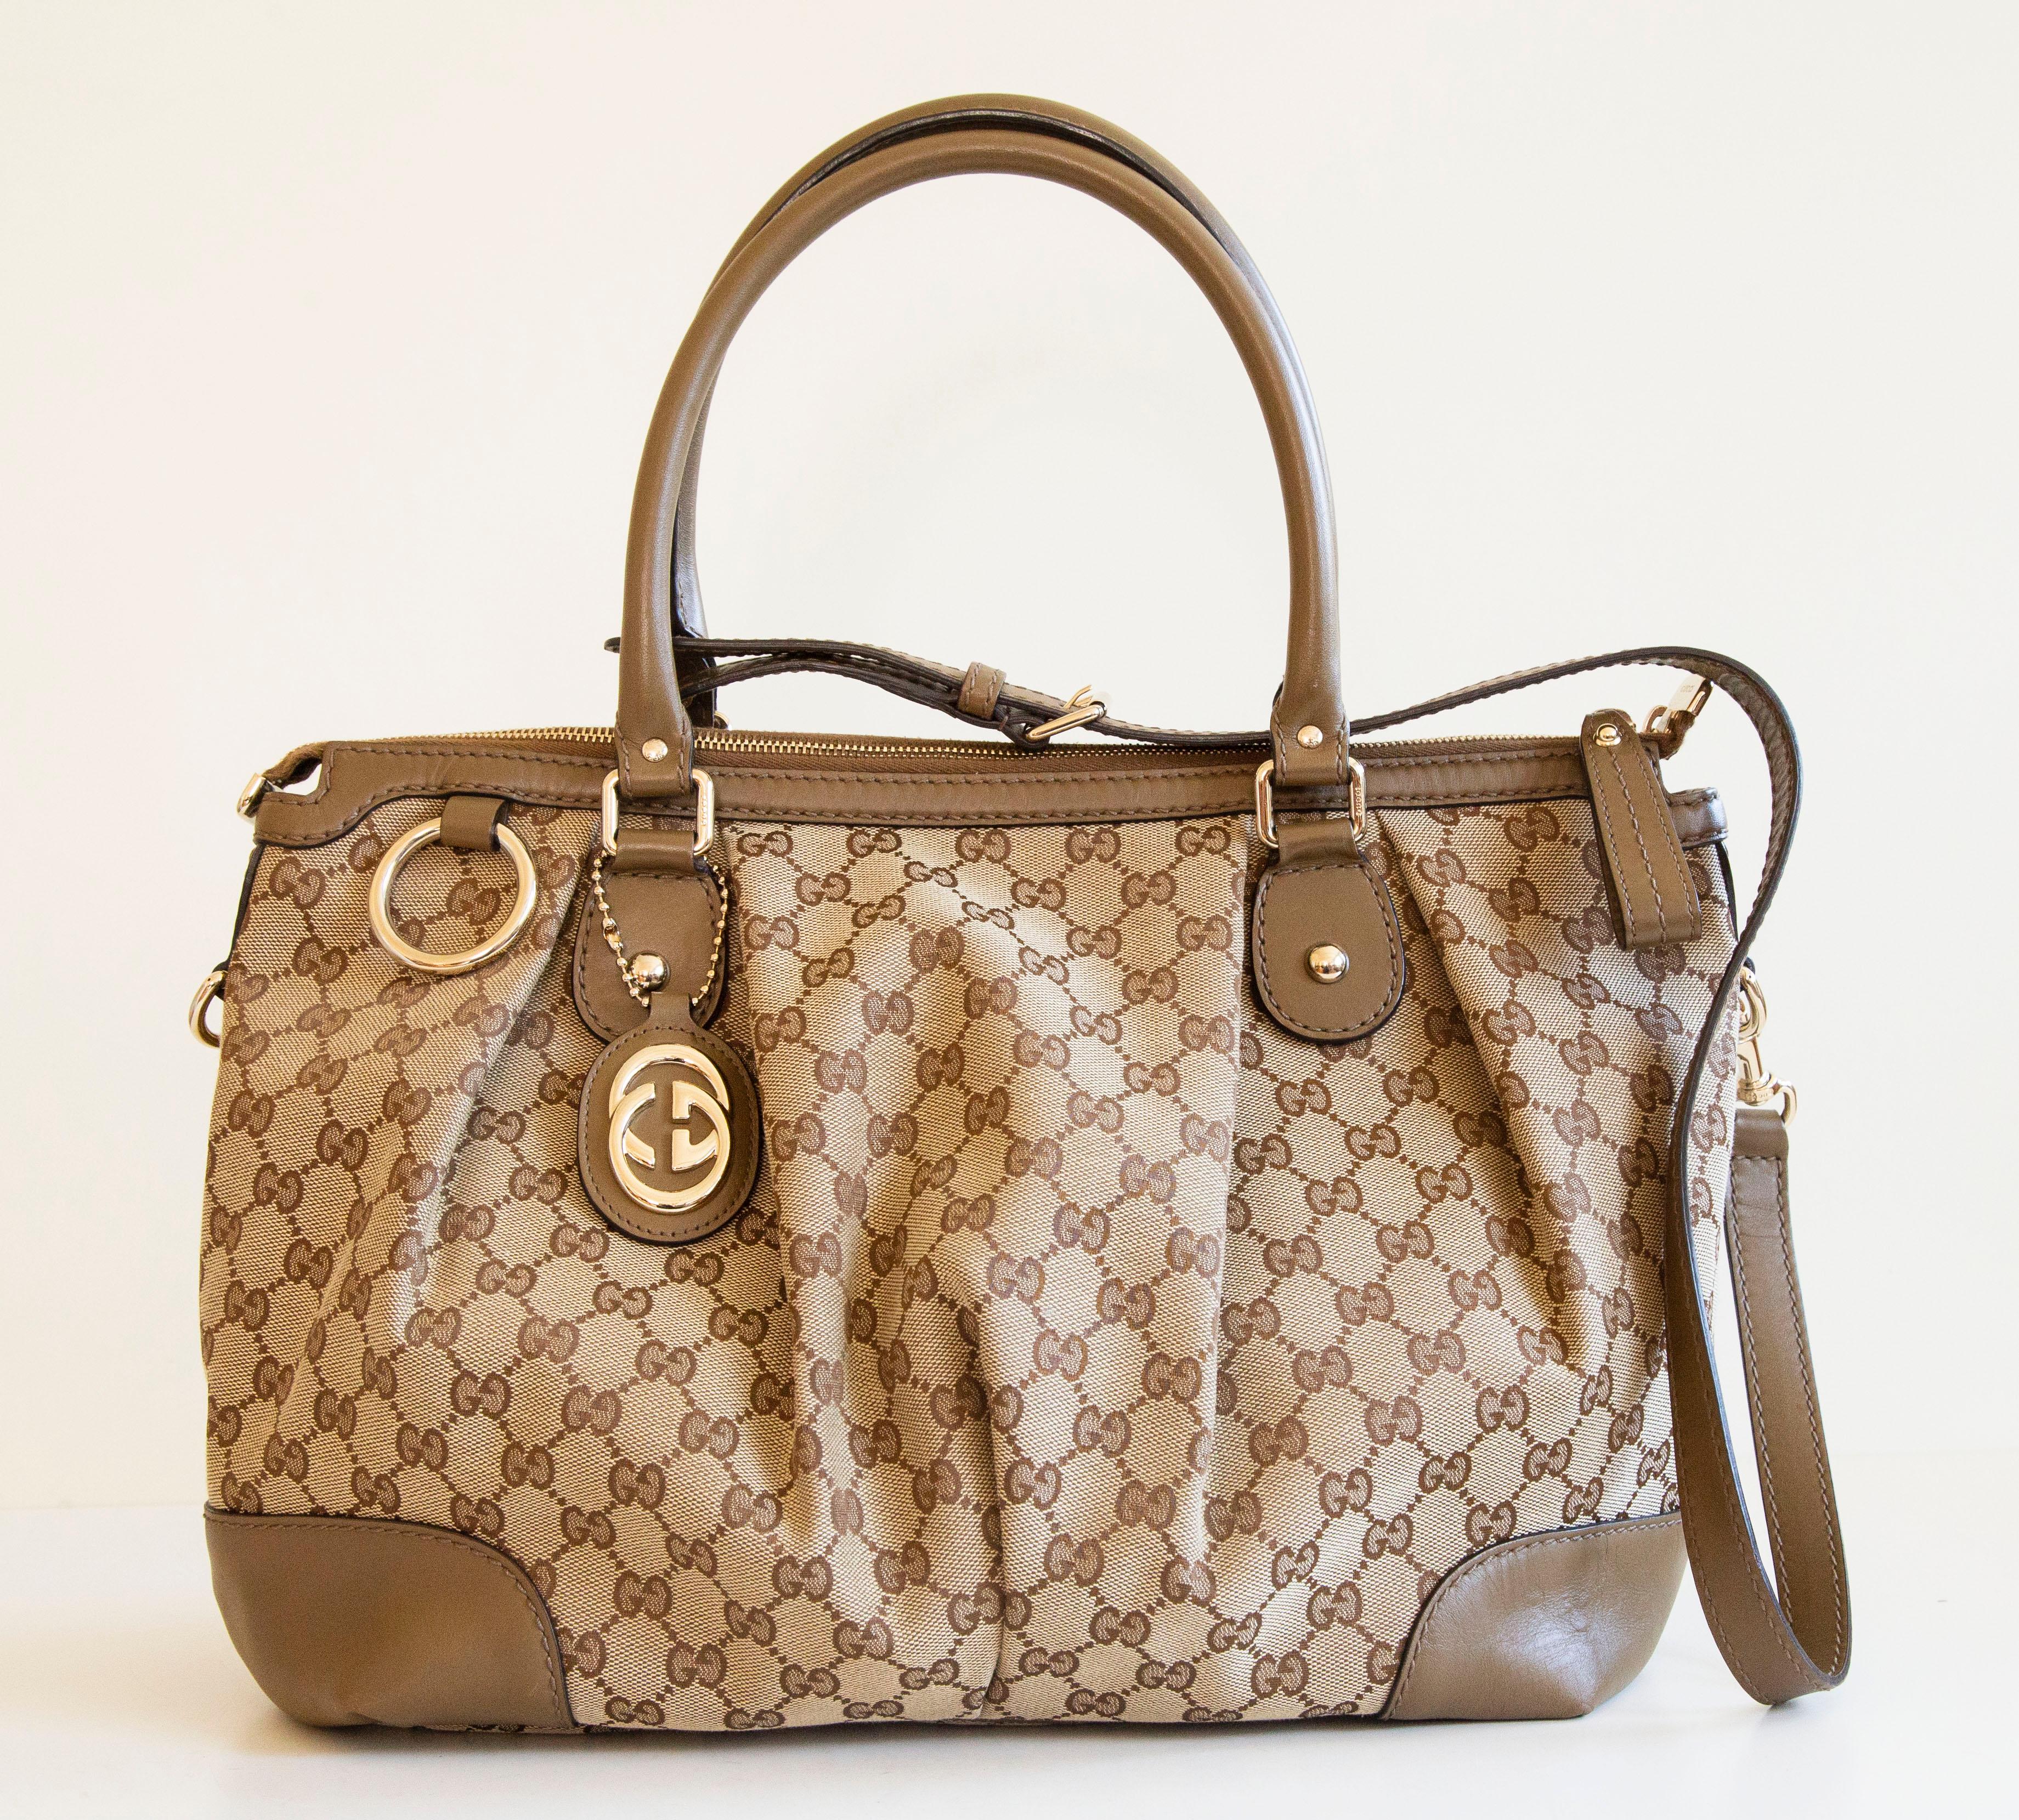 Eine authentische Gucci Sukey Zwei-Wege-Tasche. Die Tasche kann sowohl als Henkeltasche als auch als Crossbody-Tasche getragen werden, der Riemen ist abnehmbar. Die Tasche besteht aus GG Canvas, bräunlich/ockerfarbenem Leder und goldfarbener